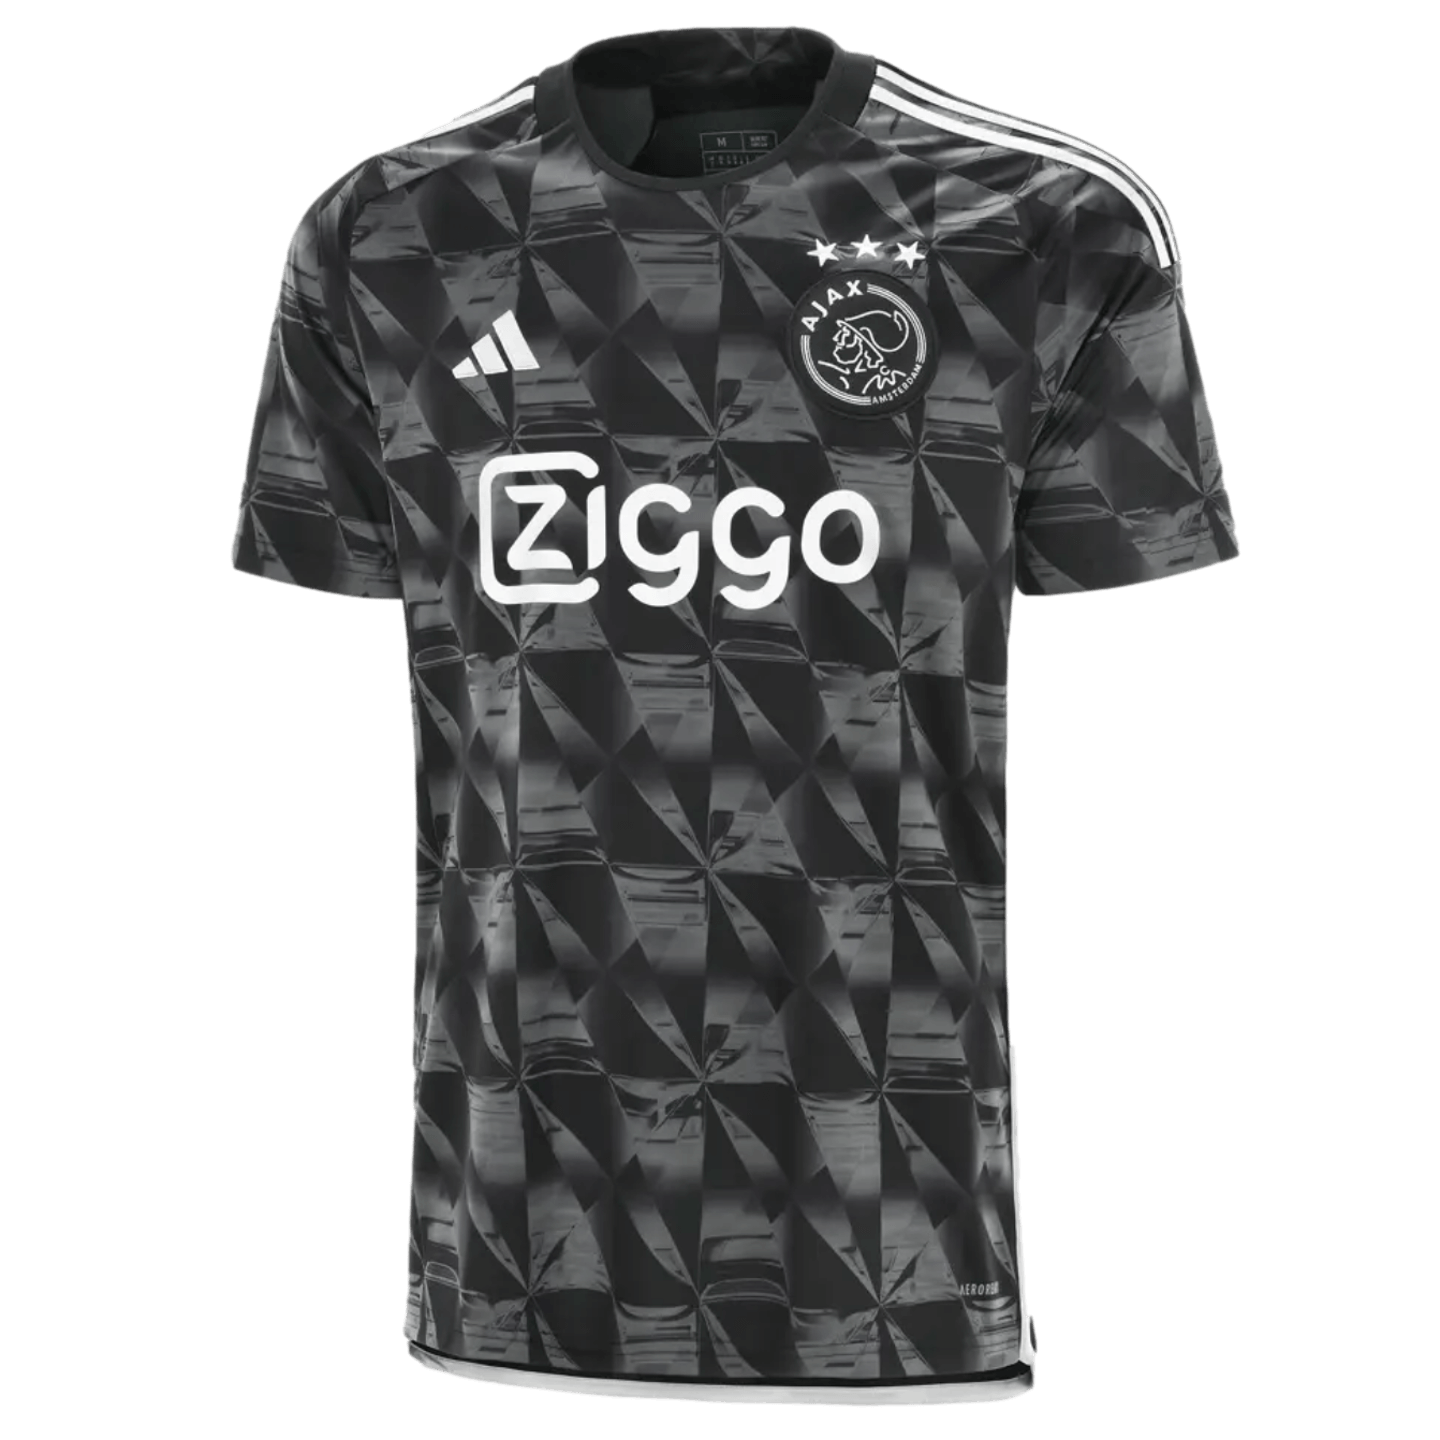 Adidas Ajax 23/24 Tercera camiseta